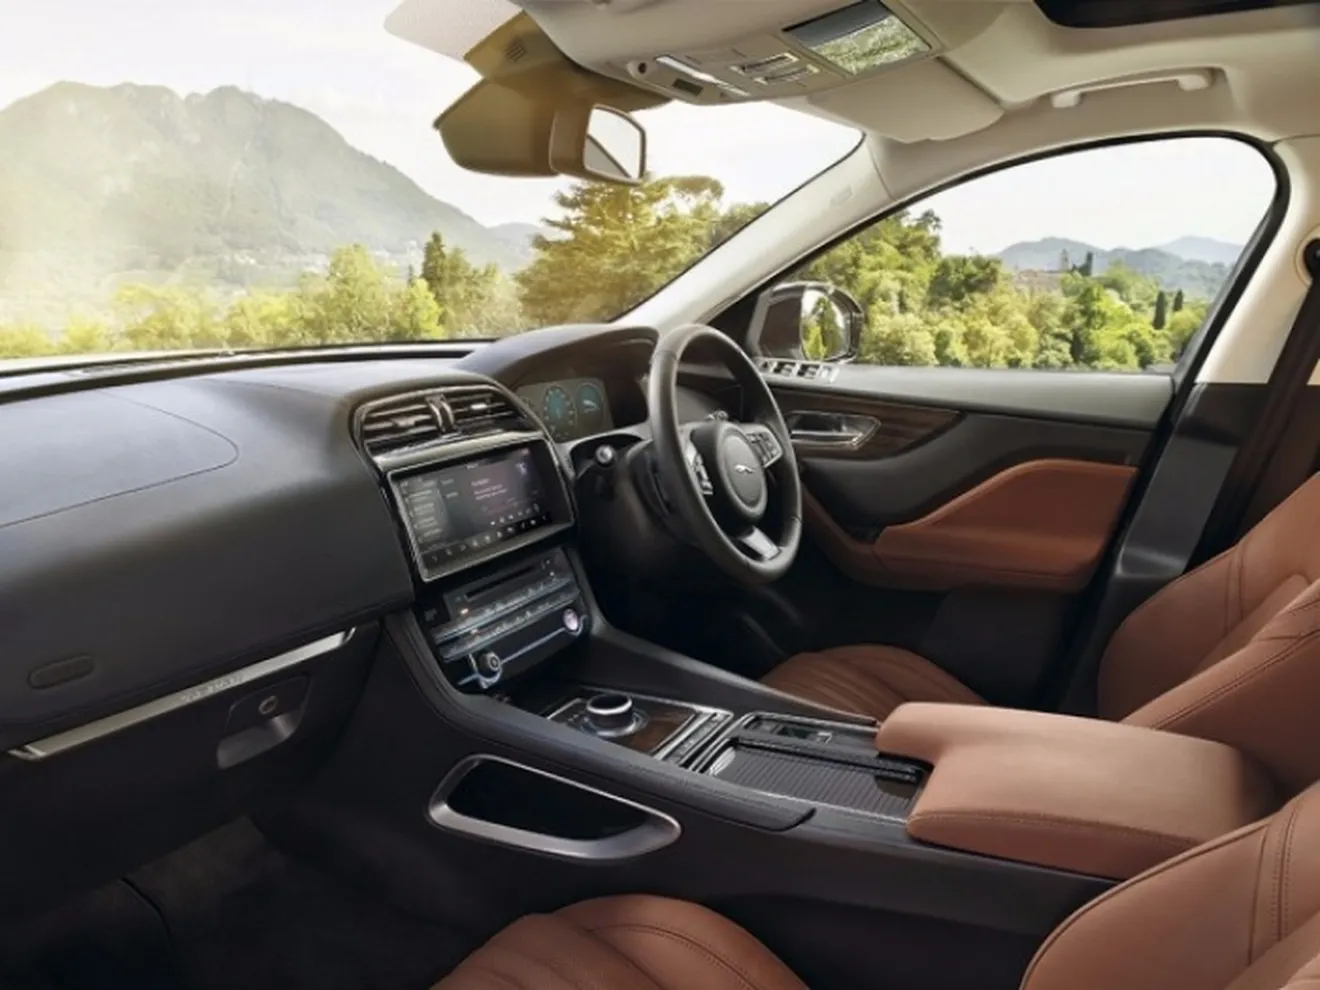 Los Jaguar Land Rover permitirán controlar la temperatura desde los Smartwatch